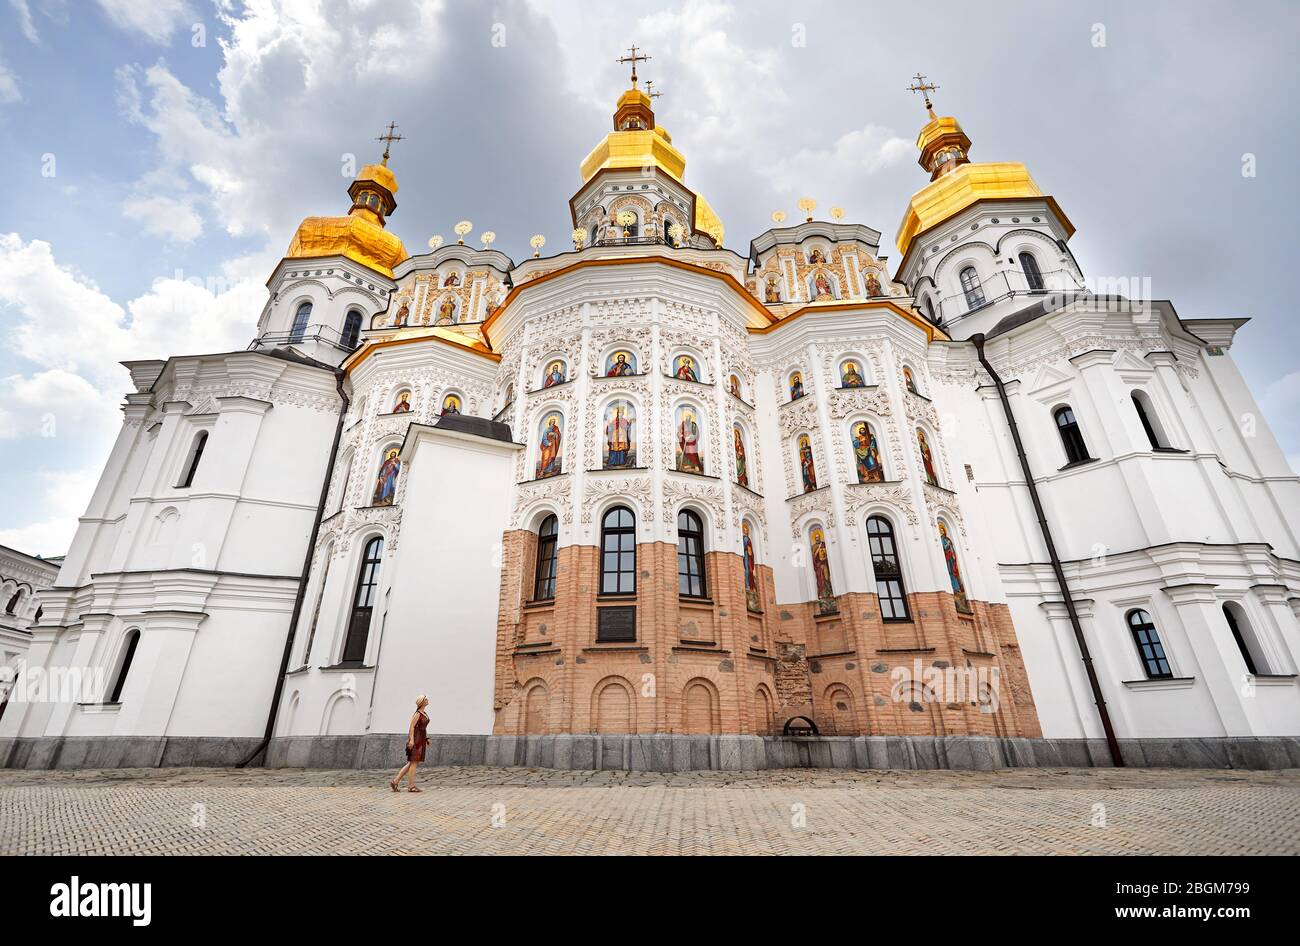 Frau in hat man in der Nähe der Kirche mit goldenen Kuppeln in Kiew Pechersk Lavra Christian komplex. Alte historische Architektur in Kiew, Ukraine Stockfoto